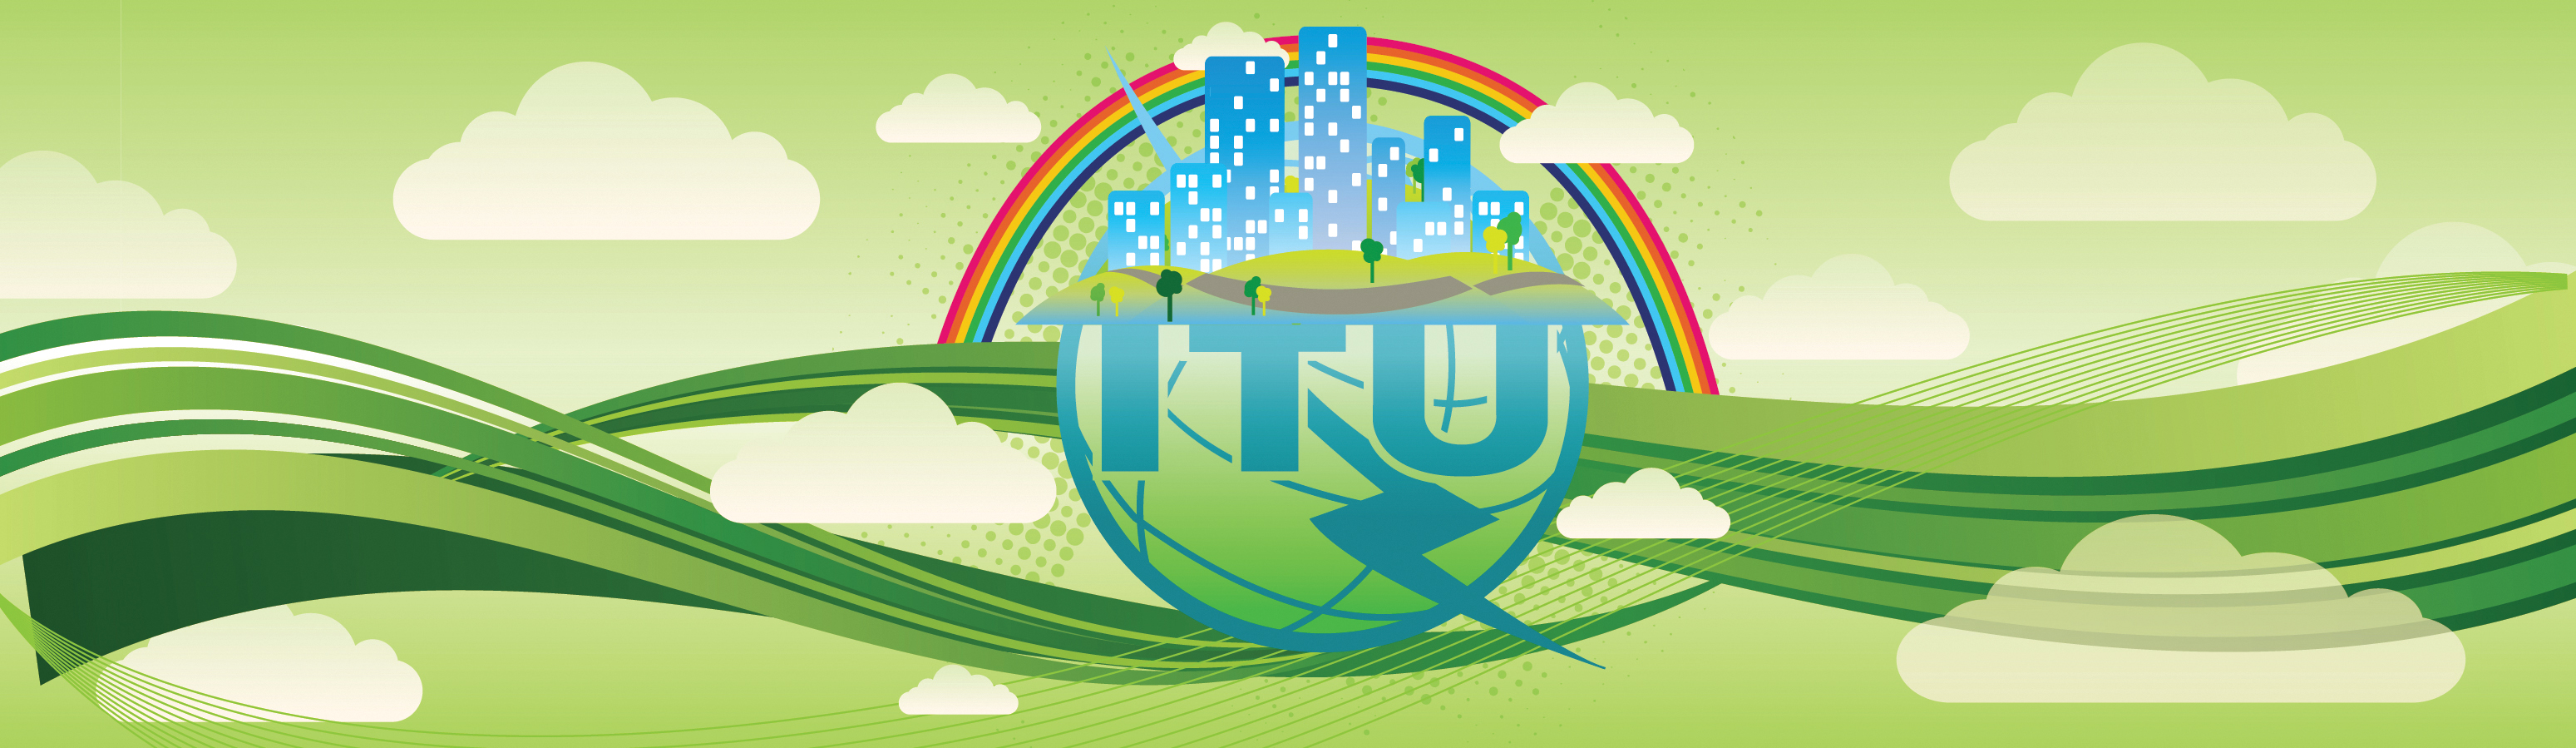 Image of branding of ITU Global Portal